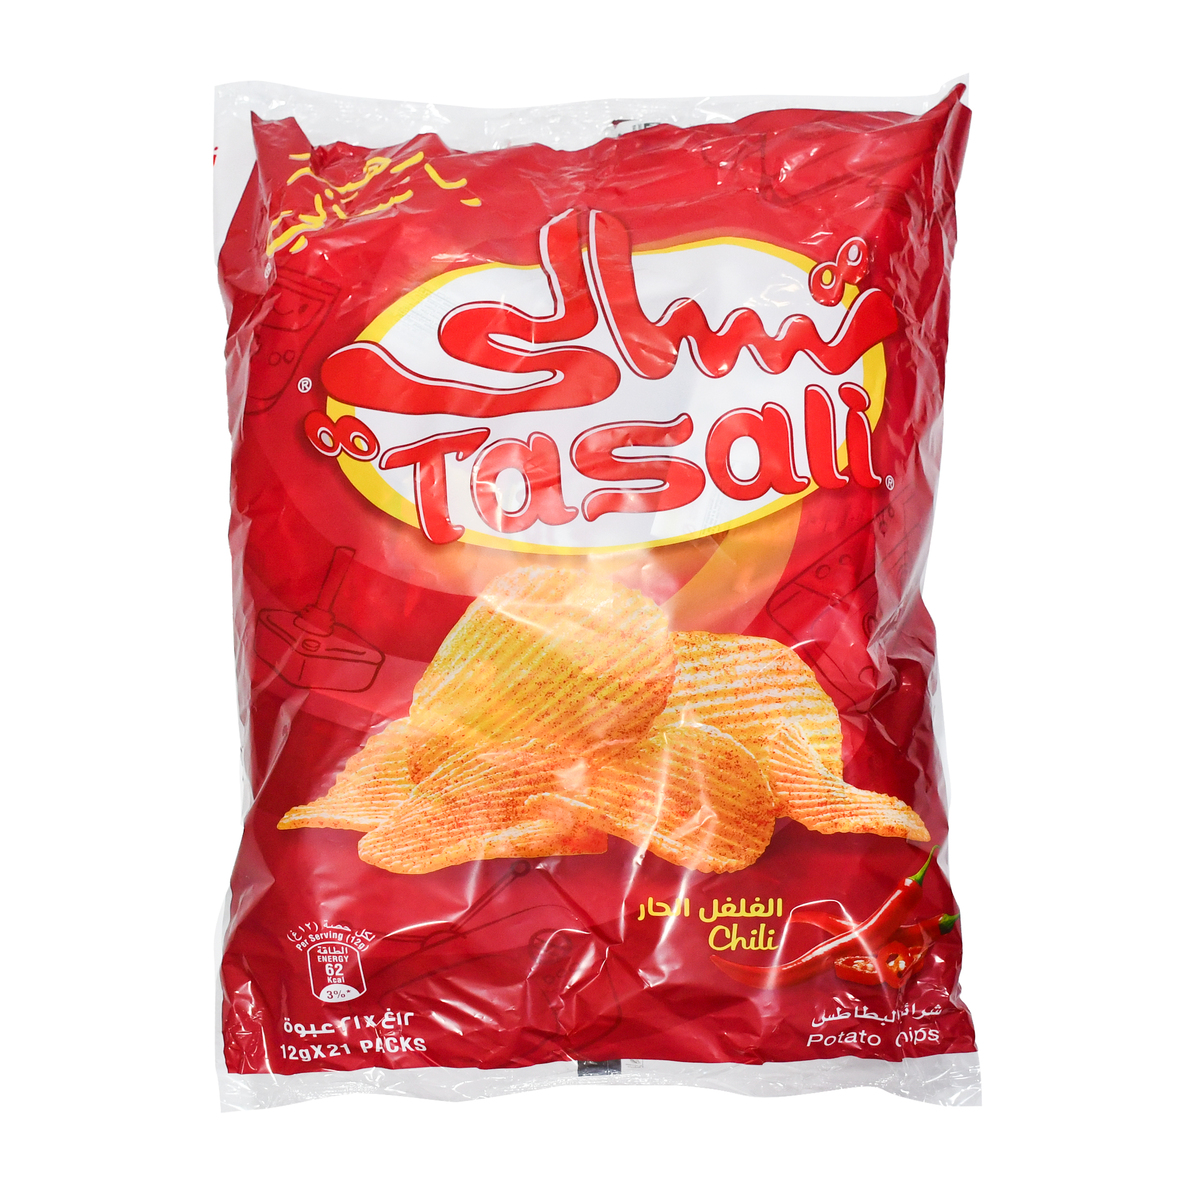 Tasali Chilli Potato Chips 12 g